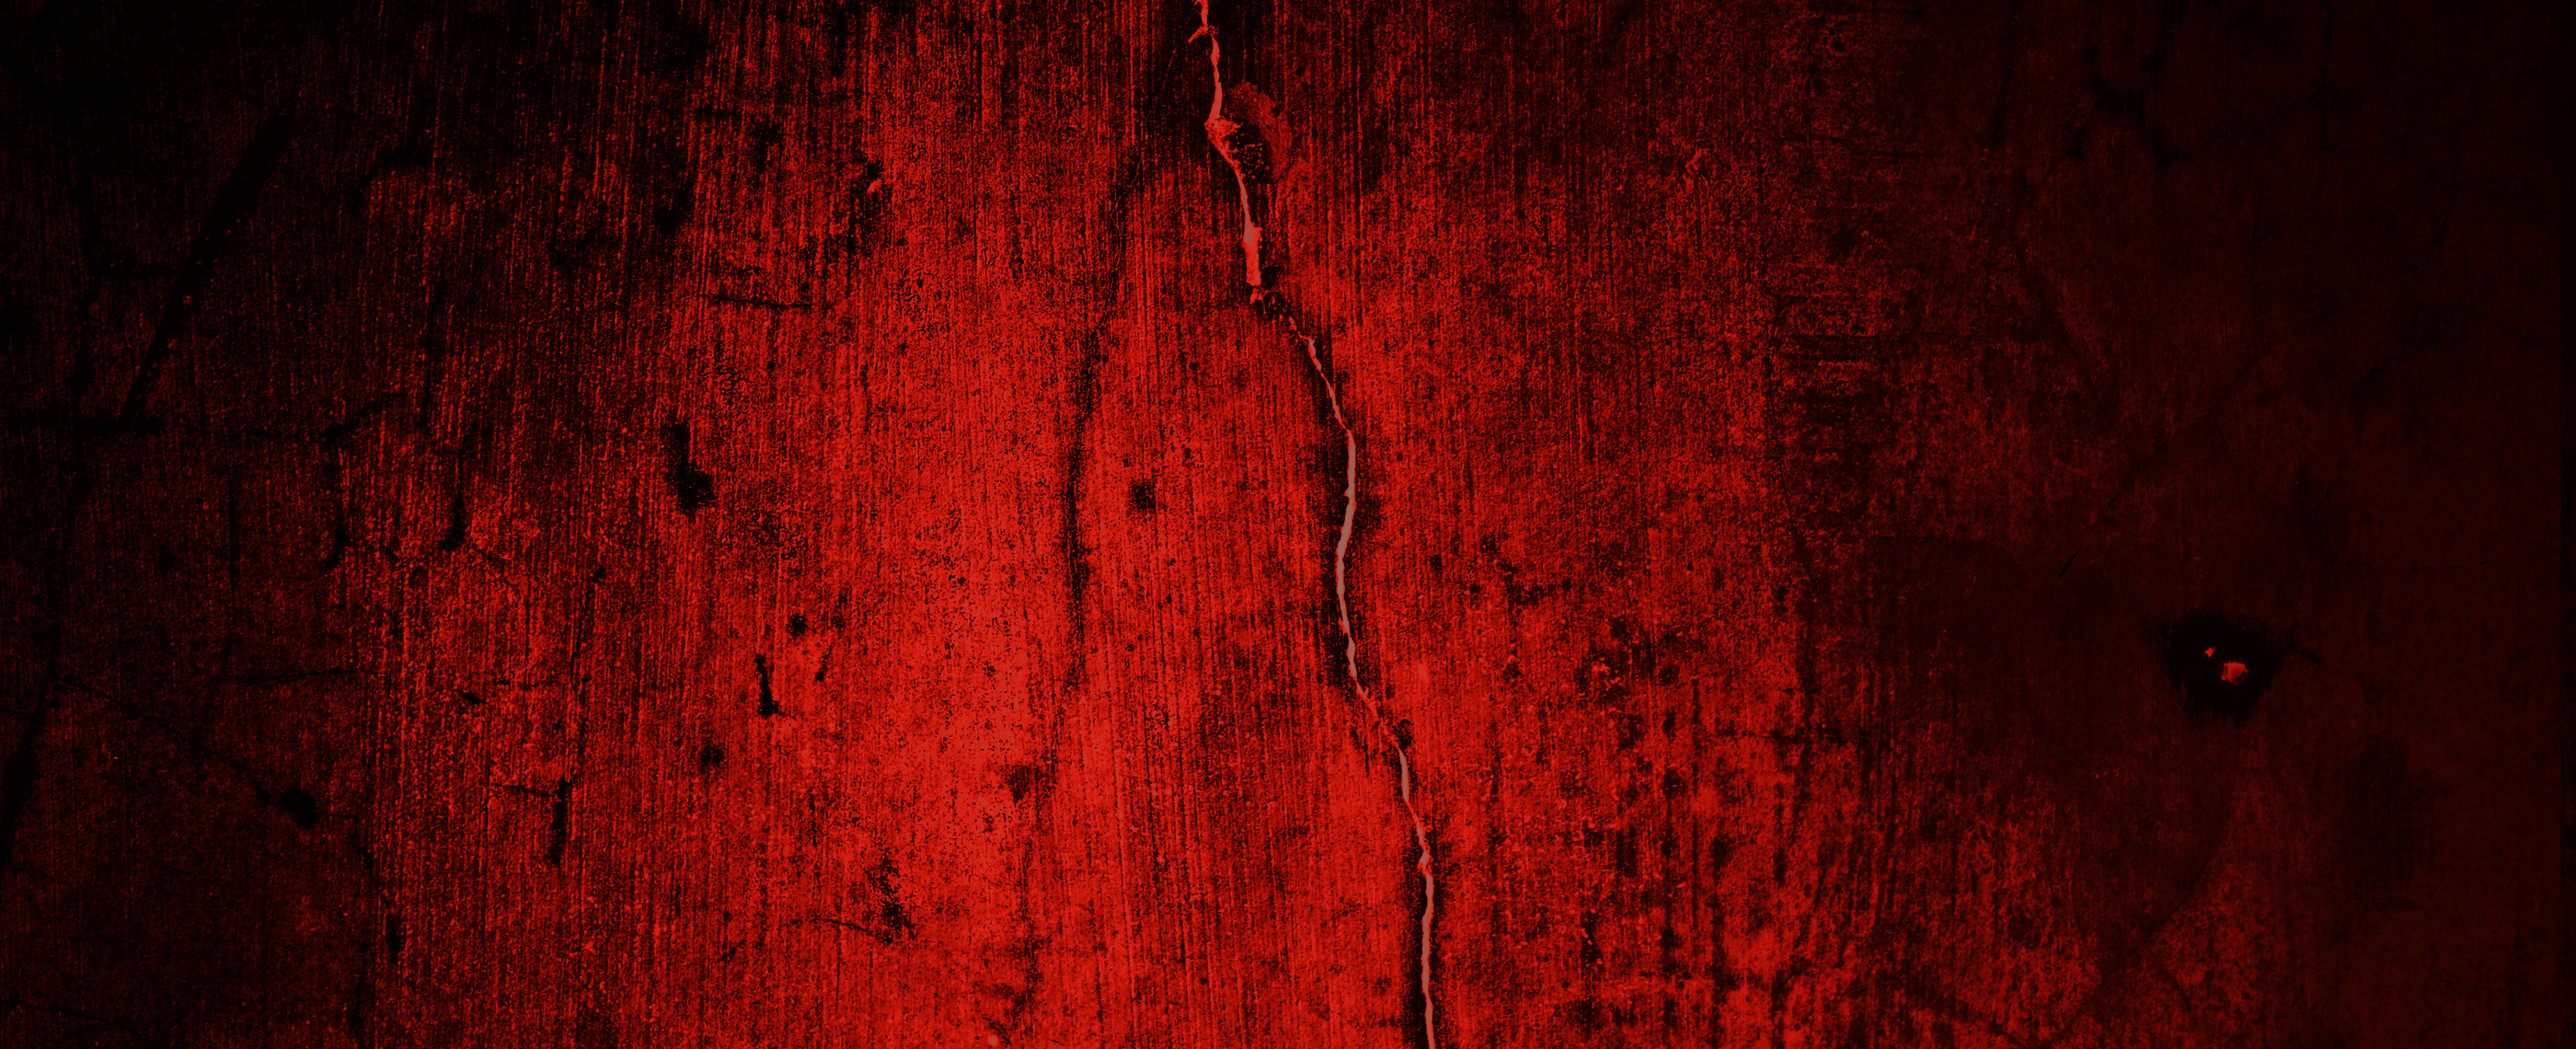 Red Grunge Wall Texture. Dark Red Grunge Background. Horror Cement Texture